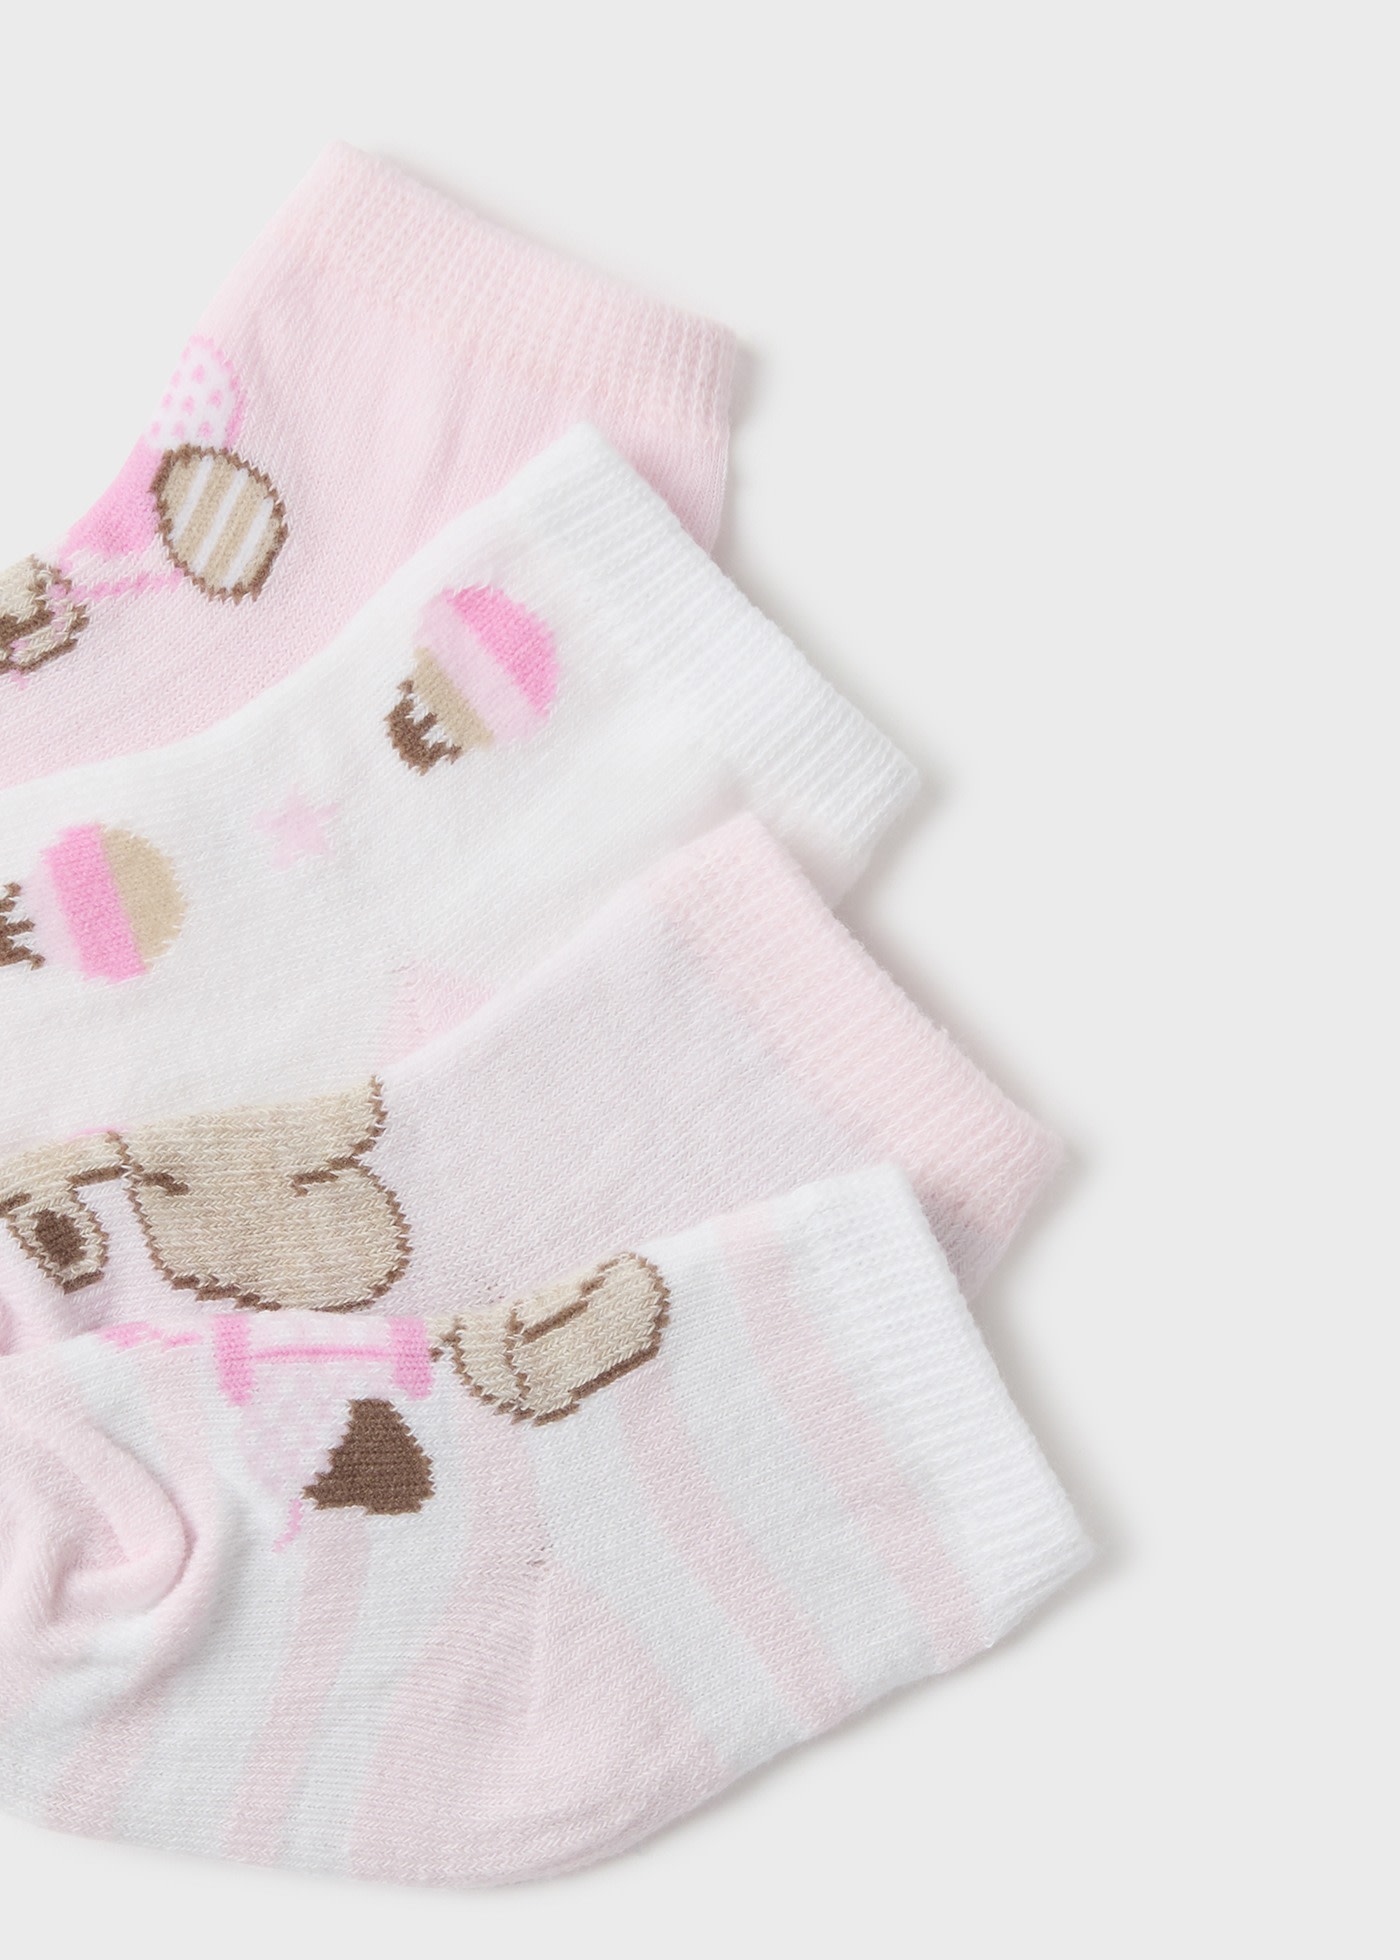 Calcetines de bebé, calcetines bonitos, calcetines de algodón para bebés,  calcetines de suelo para recién nacidos de 6 a 9 meses, calcetines de bebé